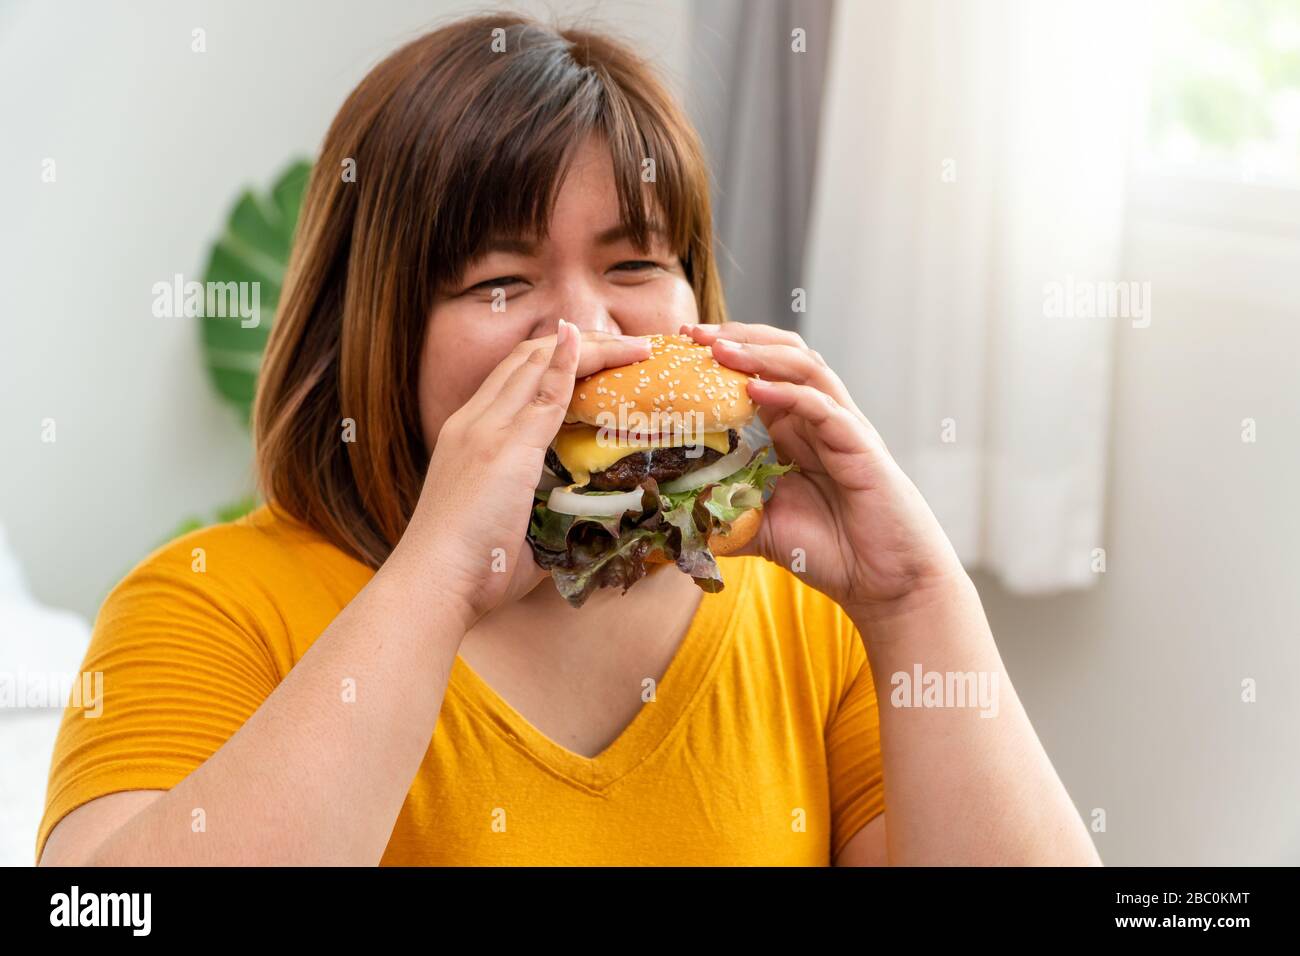 Hungrige, übergewichtige junge asiatin, die Hamburger hält, ihre hungrigen und überernährten, gluttonigen und bingen Essen. Ihr Lebensstil isst fast Food a Stockfoto